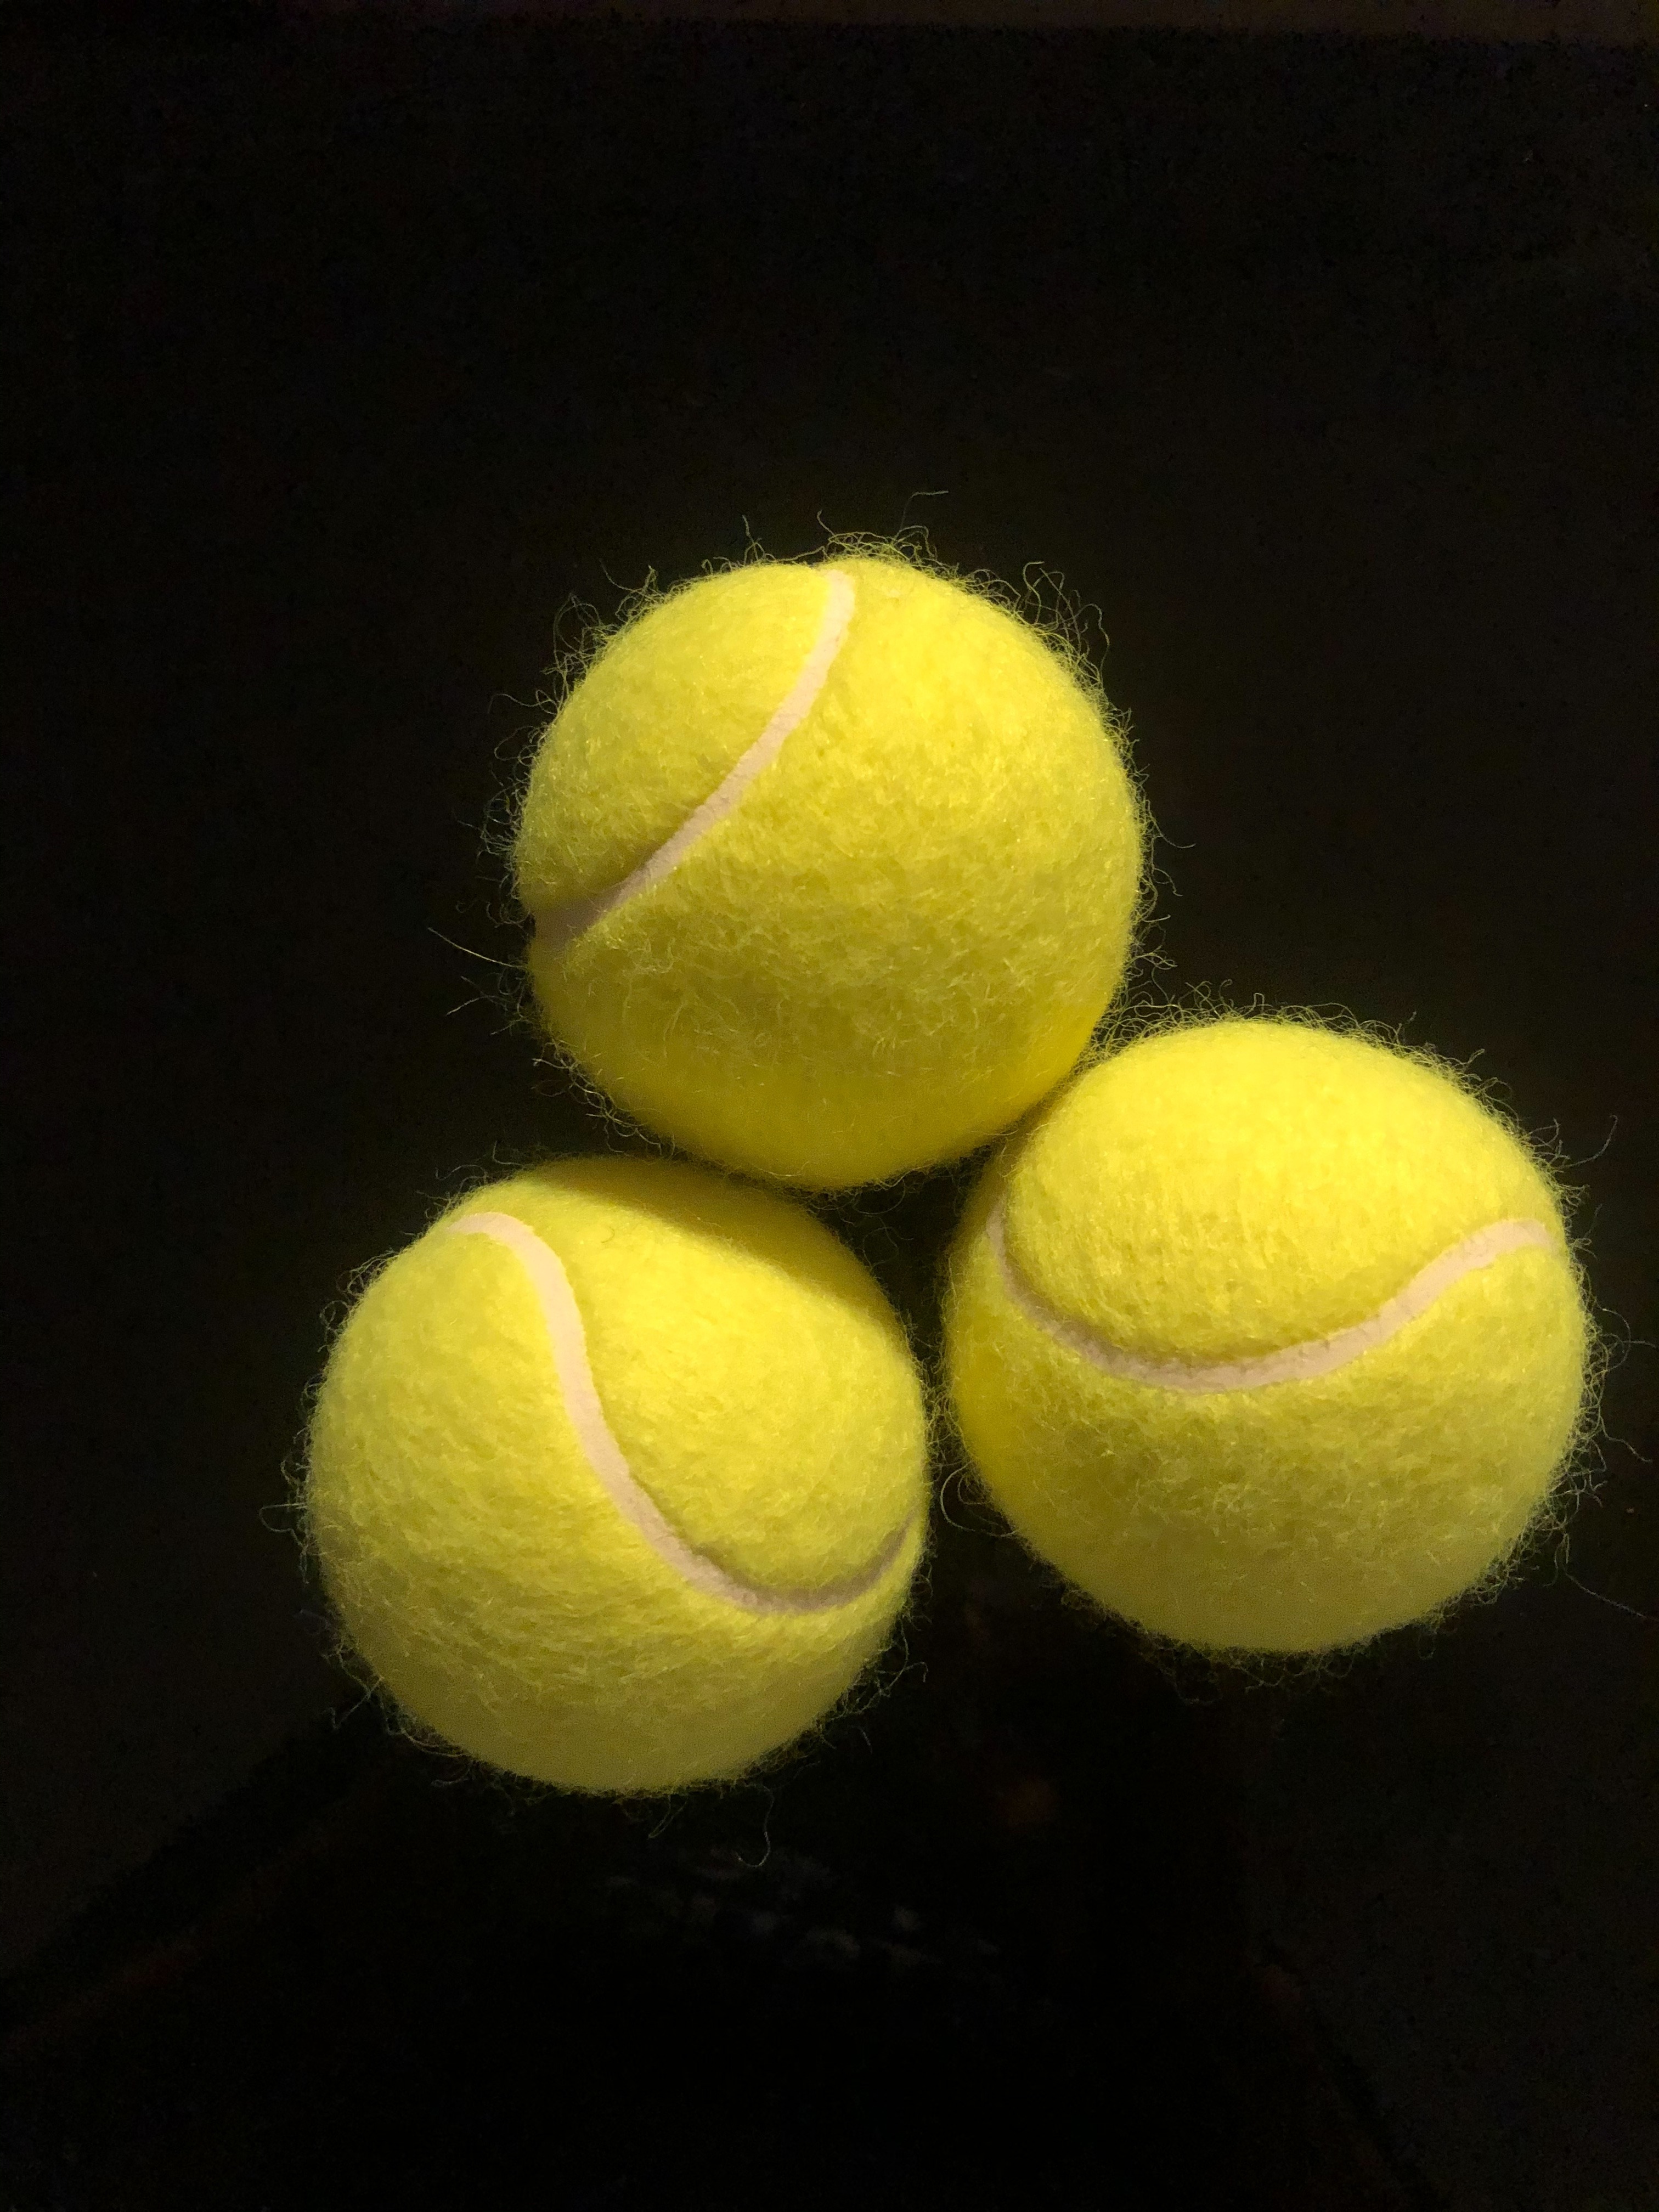 ลูกเทนนิสสีเขียว สำหรับนักเทนนิส เด้ง95% แพค 3 ลูก คุณภาพสูง ราคาถูกเว่อร์